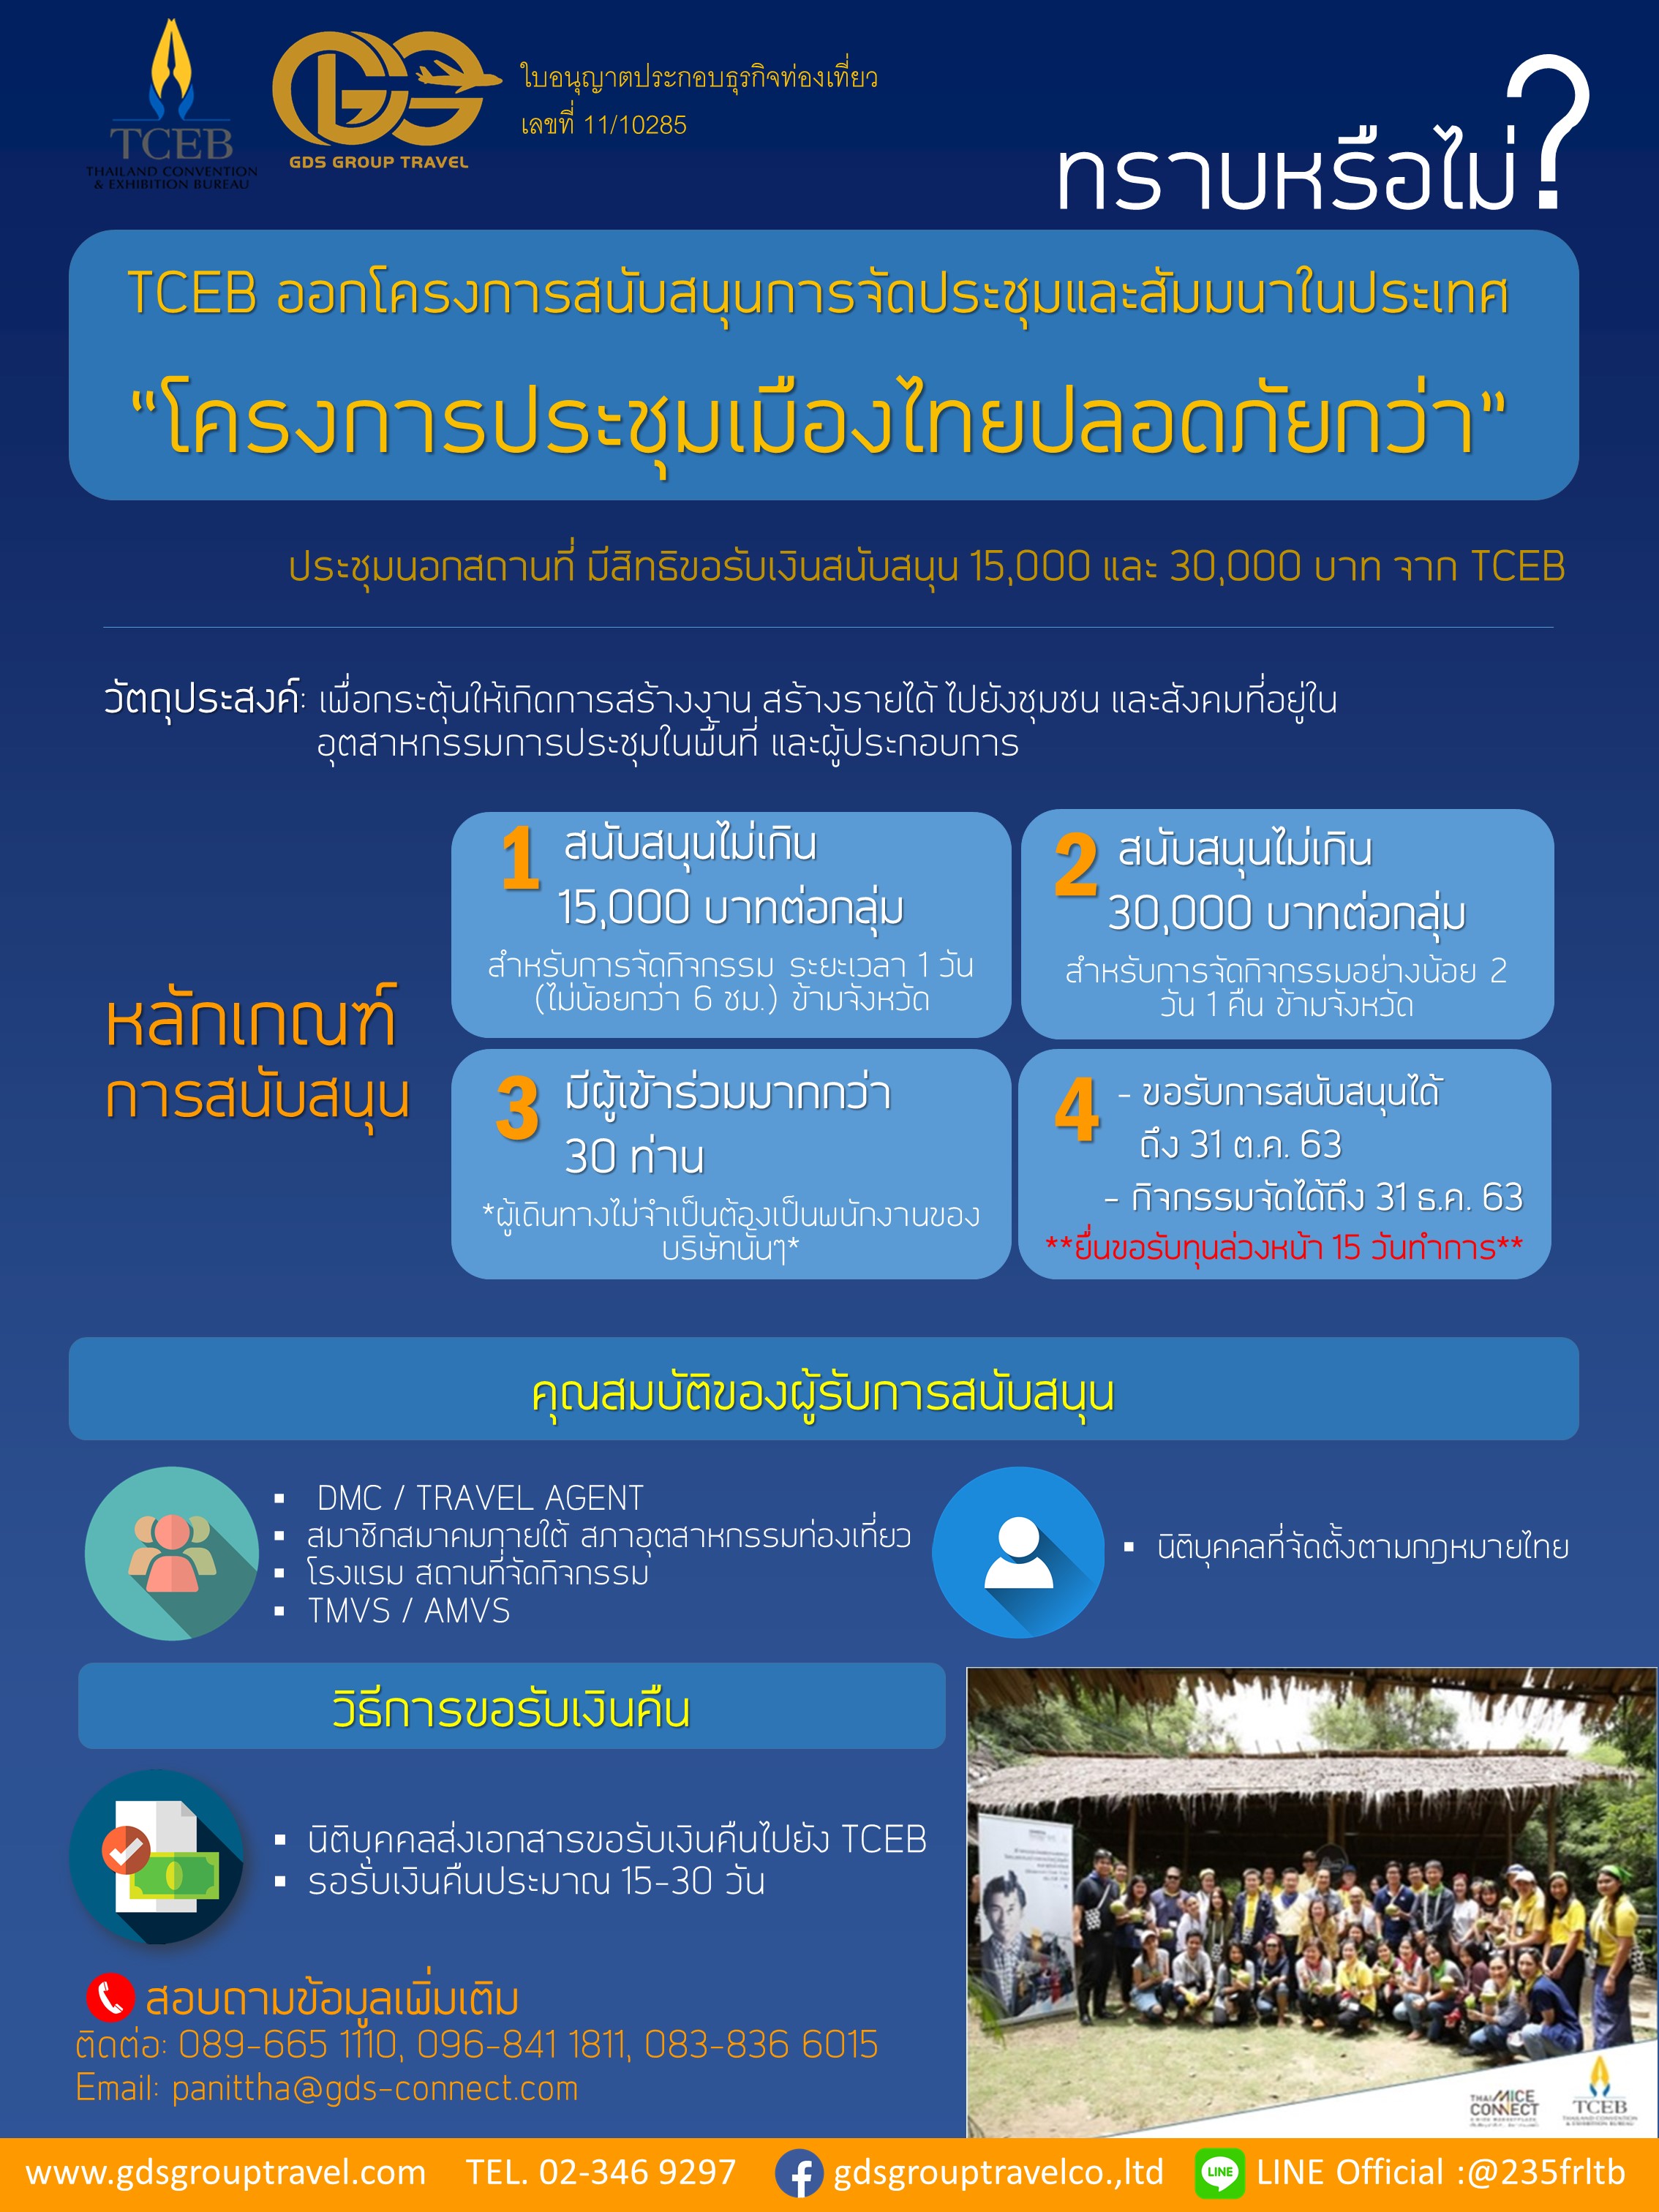 TCEB ออกโครงการสนับสนุนการจัดประชุม และสัมมนาภายในประเทศ “โครงการประชุมเมืองไทยปลอดภัยกว่า”